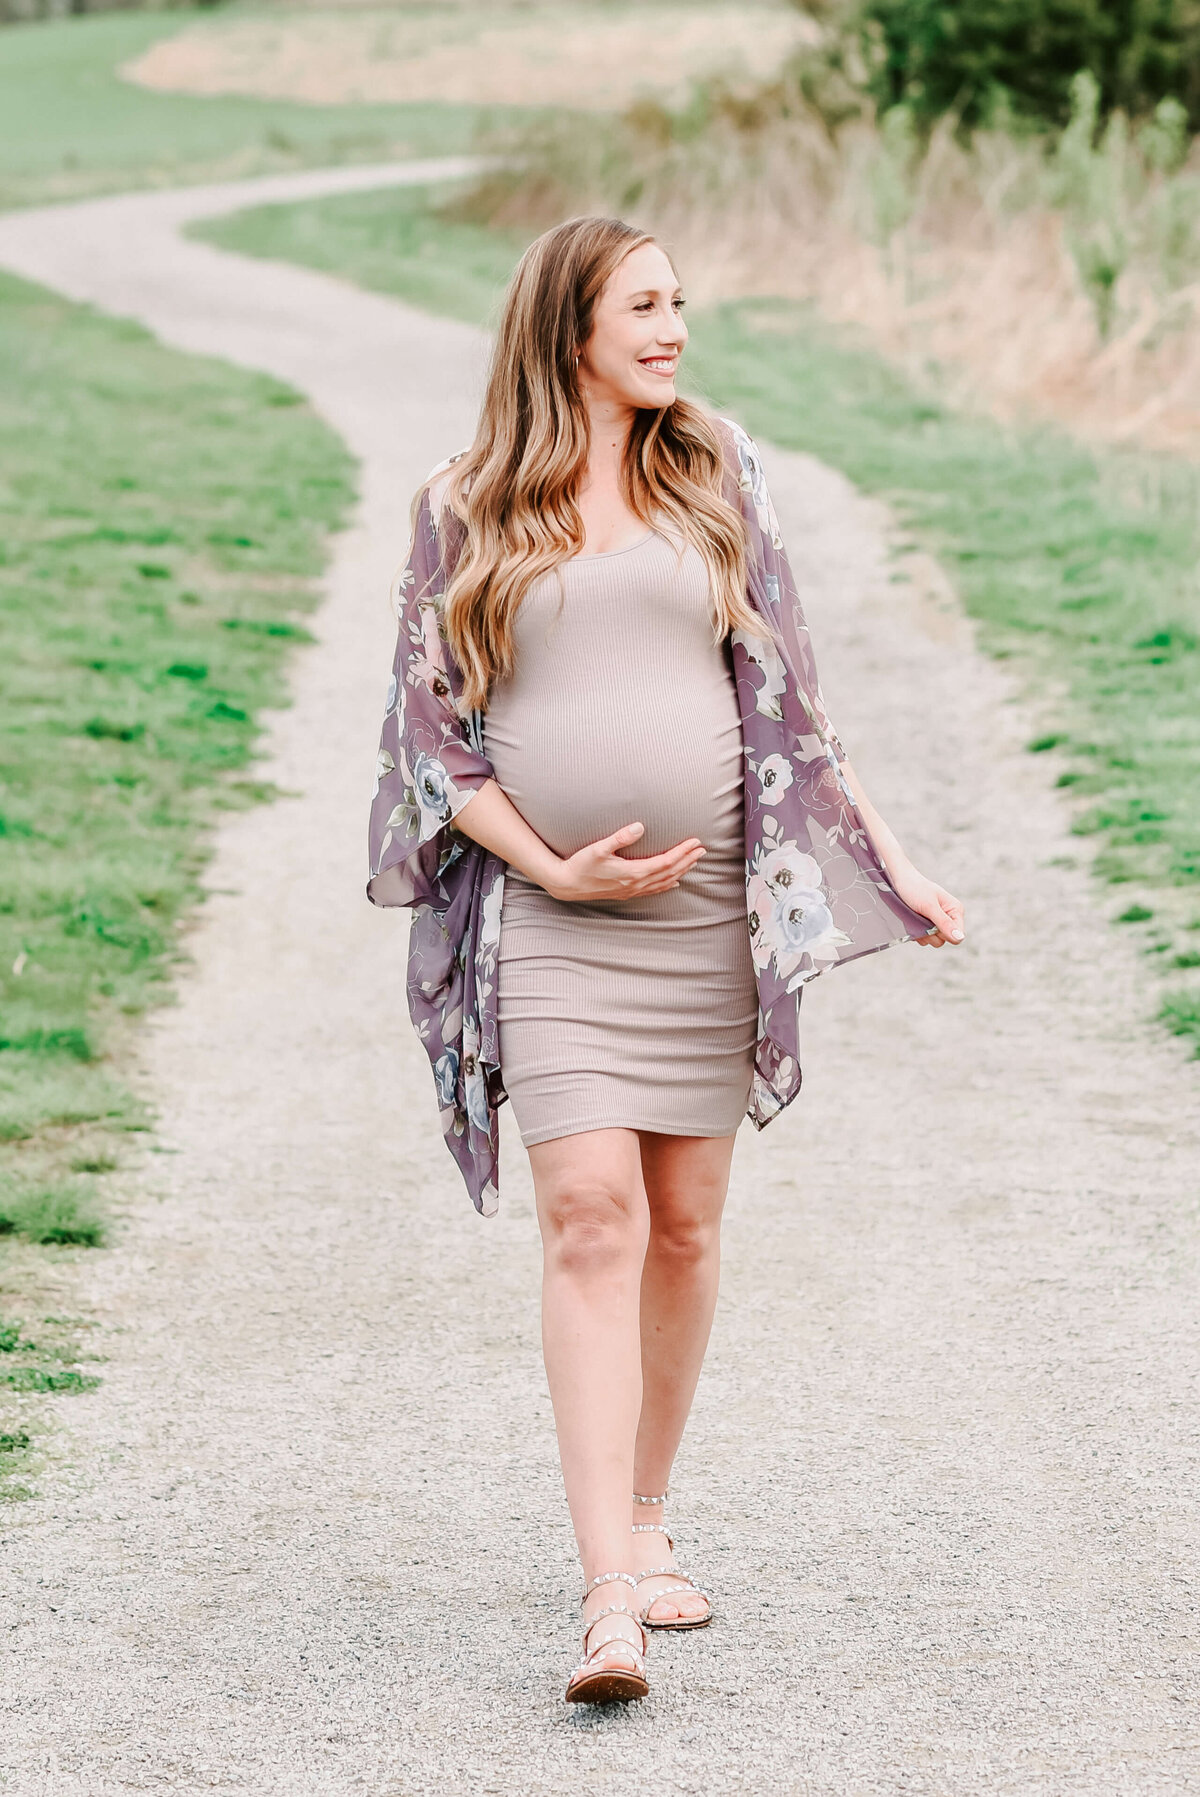 Louisville-Maternity-Photographer-50